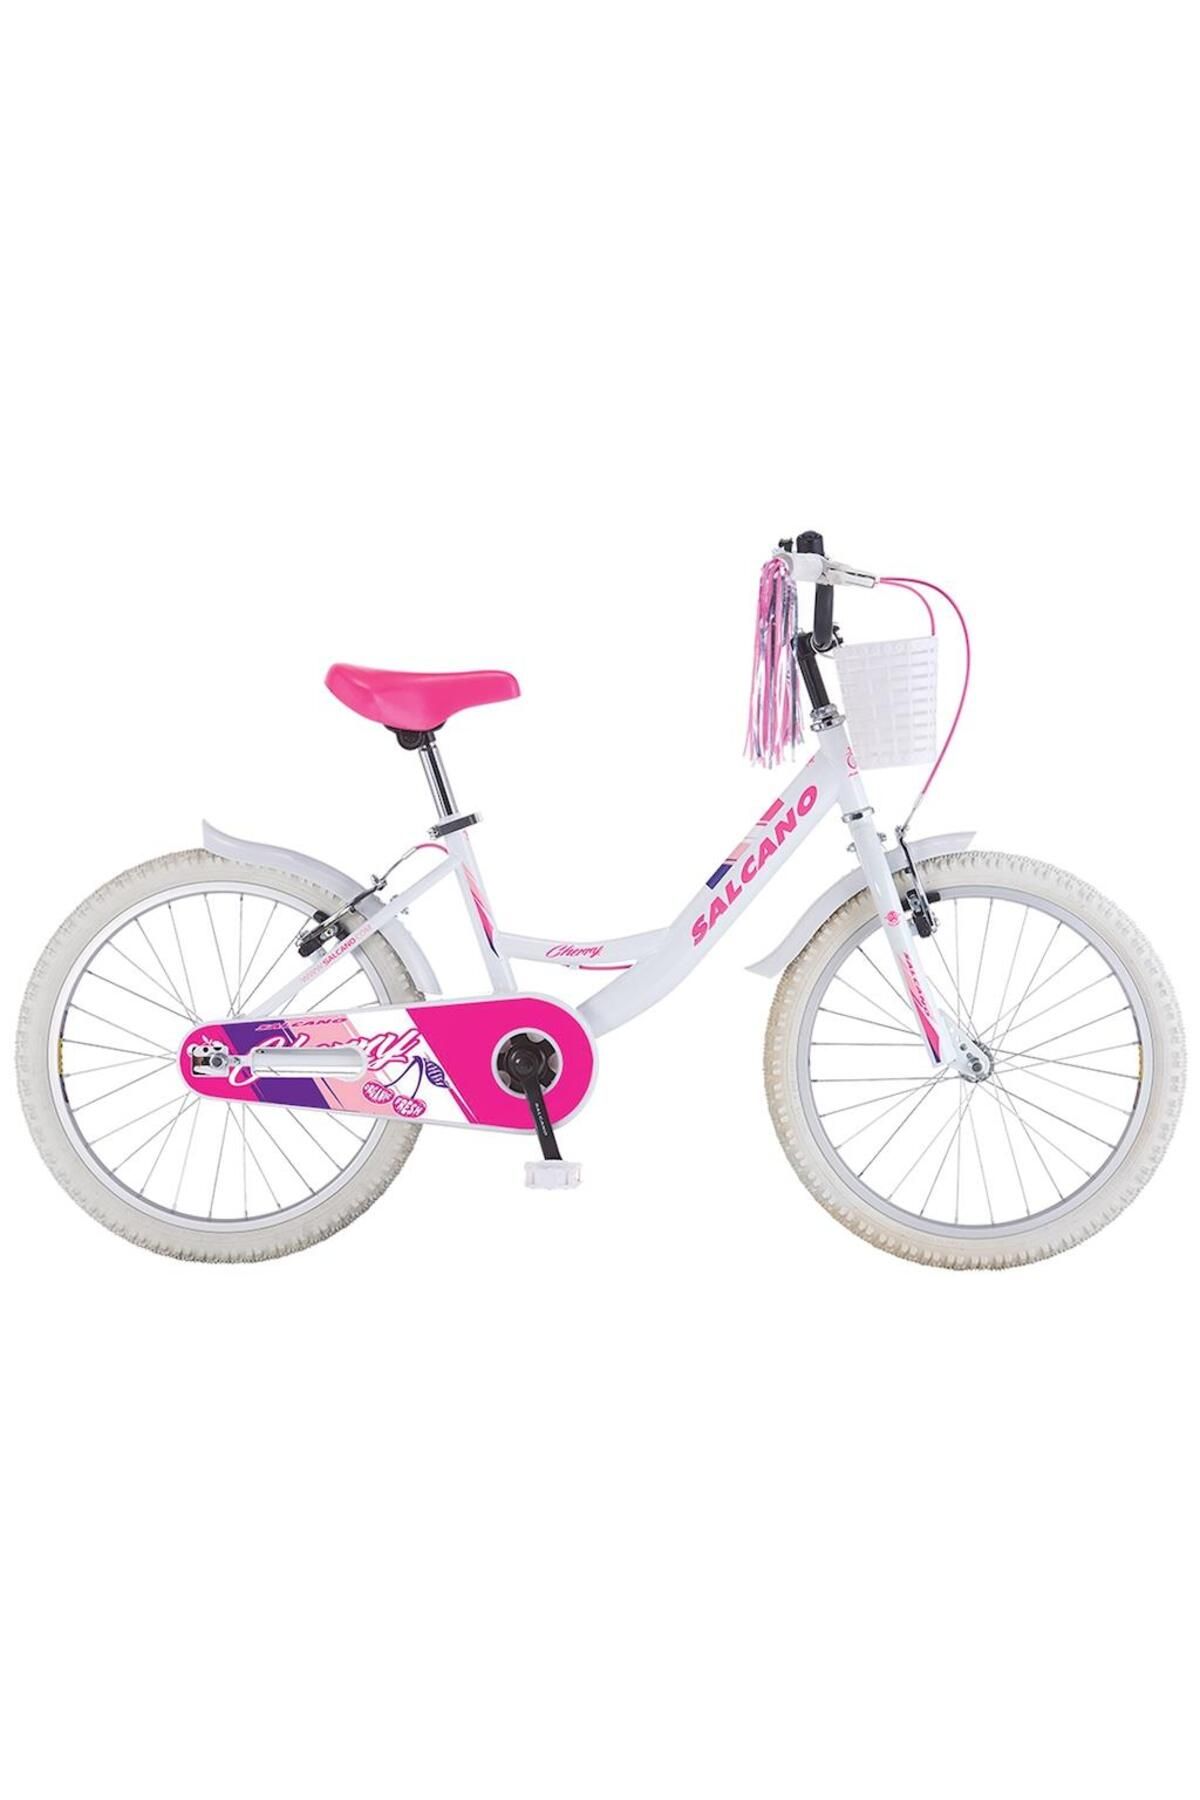 Salcano Cherry 20 Jant Kız Çocuk Bisikleti 2022 Bisikleti